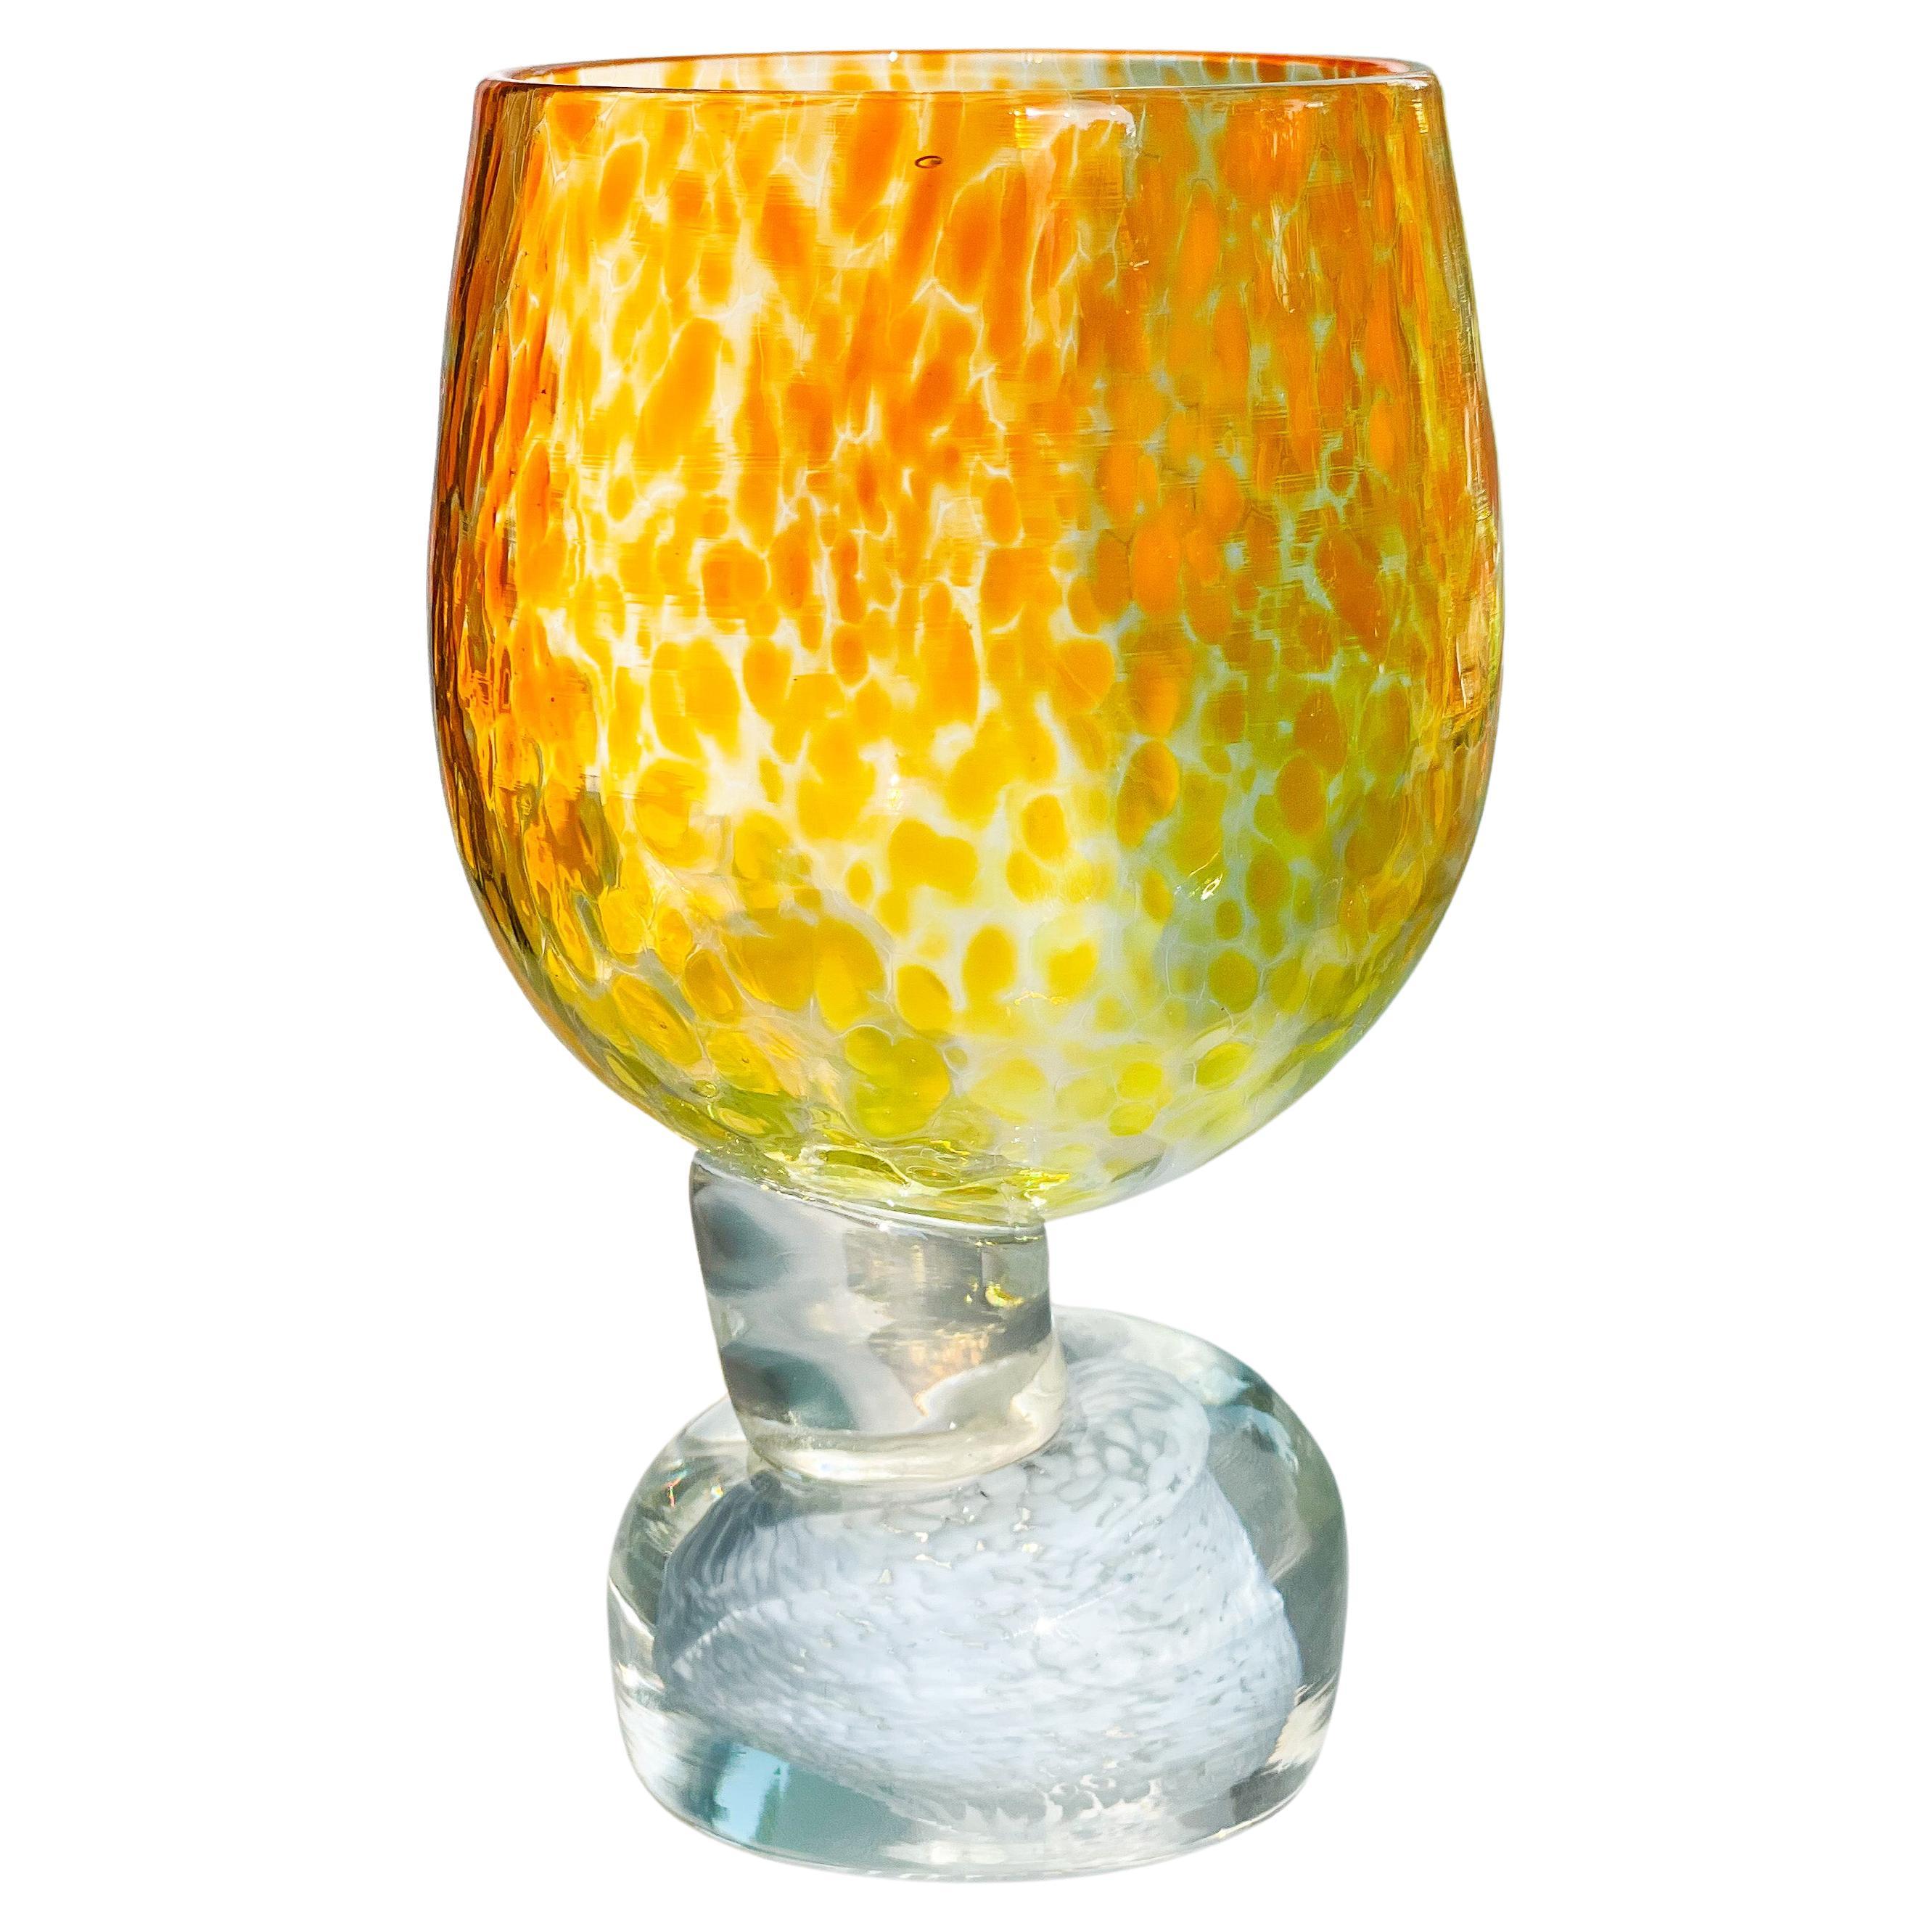 Joyful Glassware